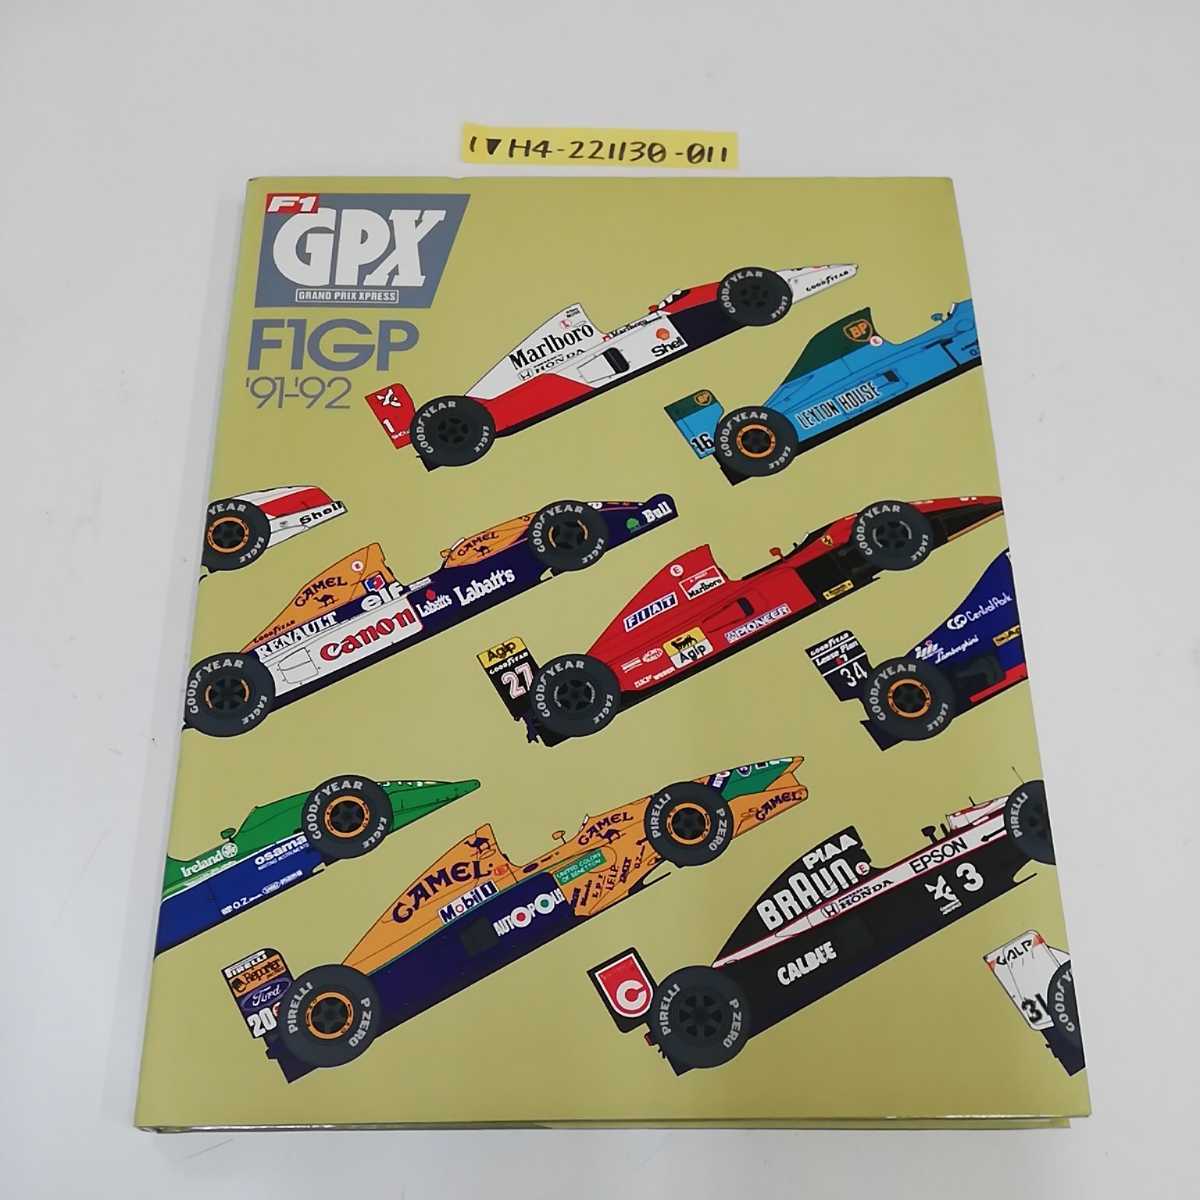 超歓迎された 写真集 F1 GPX 総集編 XPRESS PRIX GRAND 趣味/スポーツ 